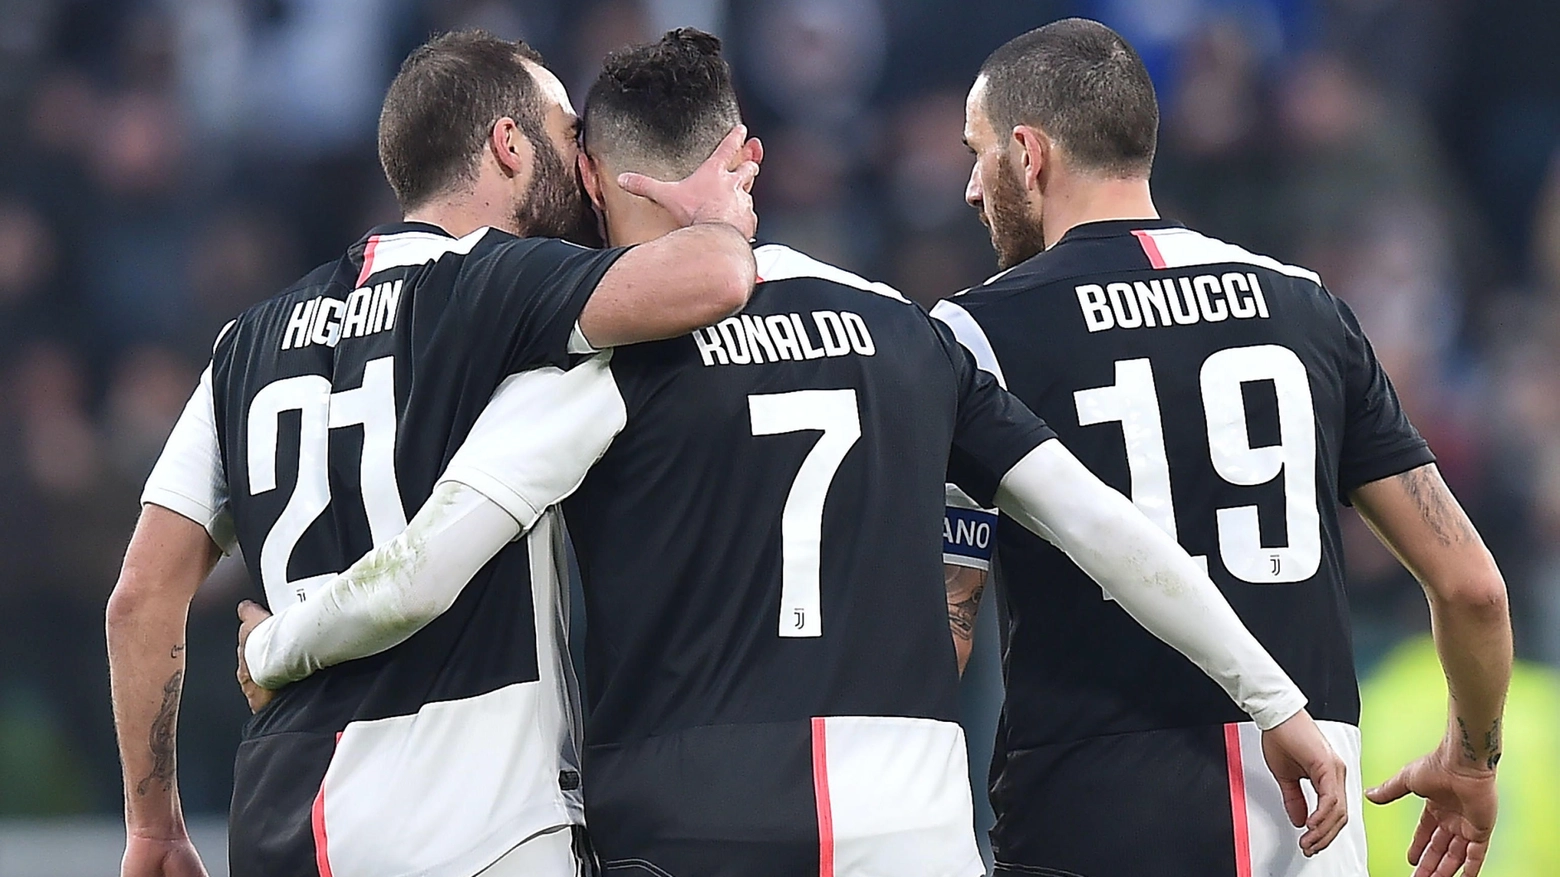 La Juve va a caccia del quarto successo di fila in campionato